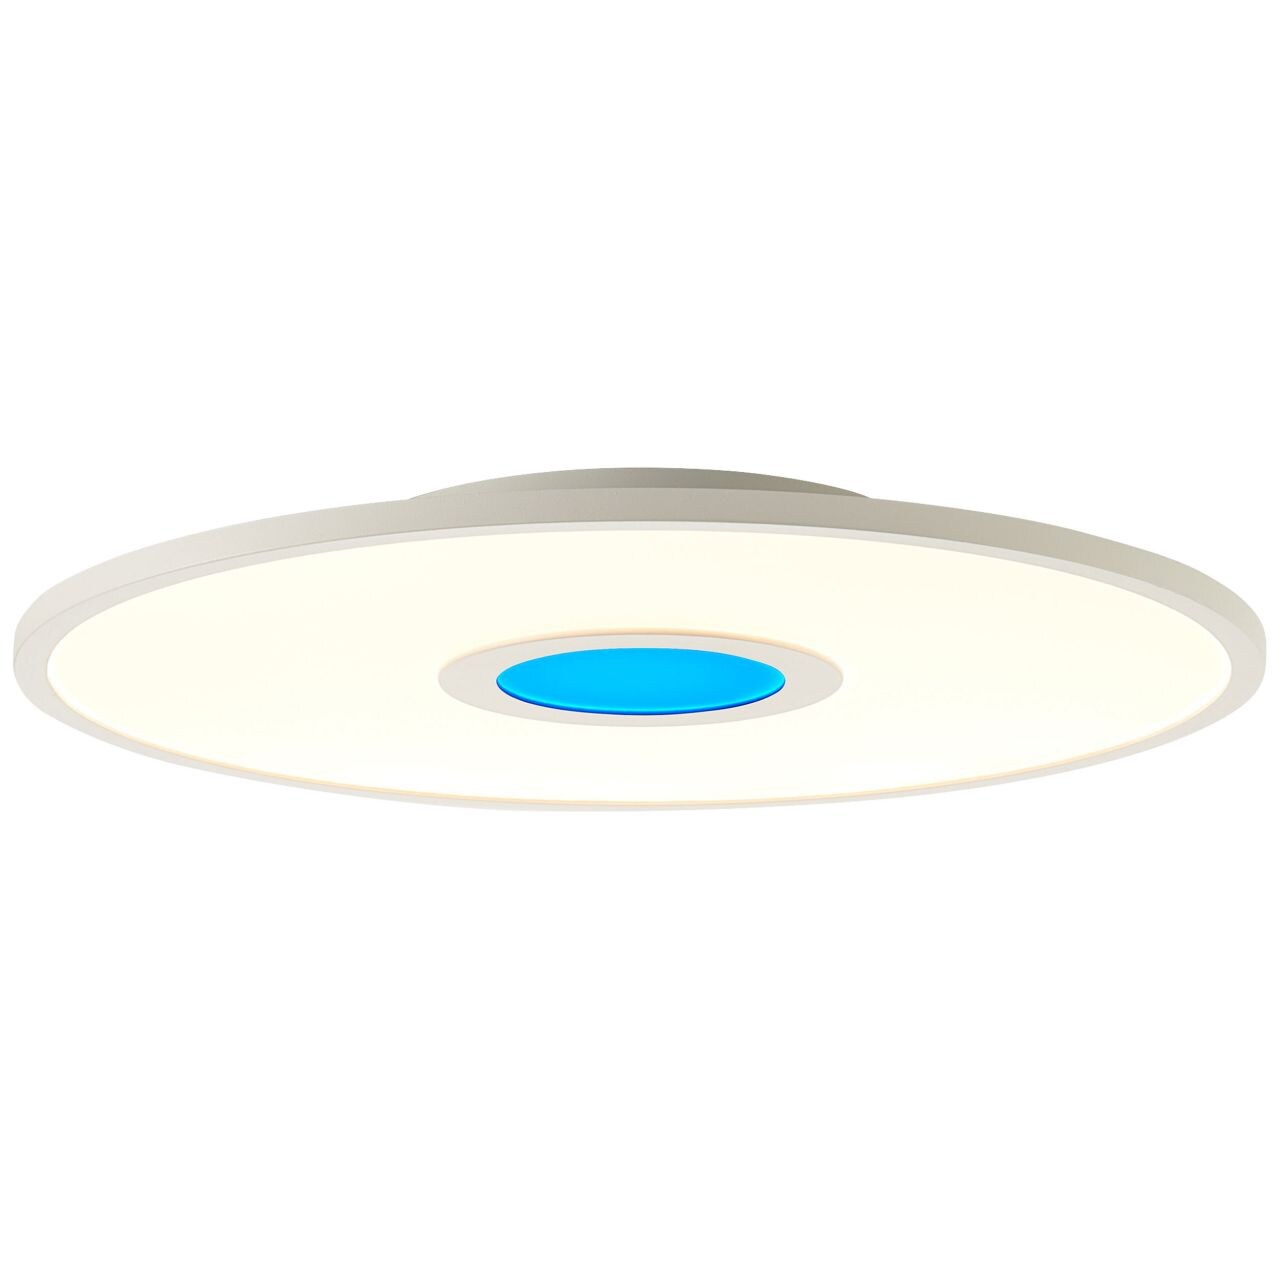 BRILLIANT Lampe Odella LED Deckenaufbau-Paneel 45cm weiß   1x 24W LED integriert, (2940lm, 2700-6500K)   RGB-Dekolicht f